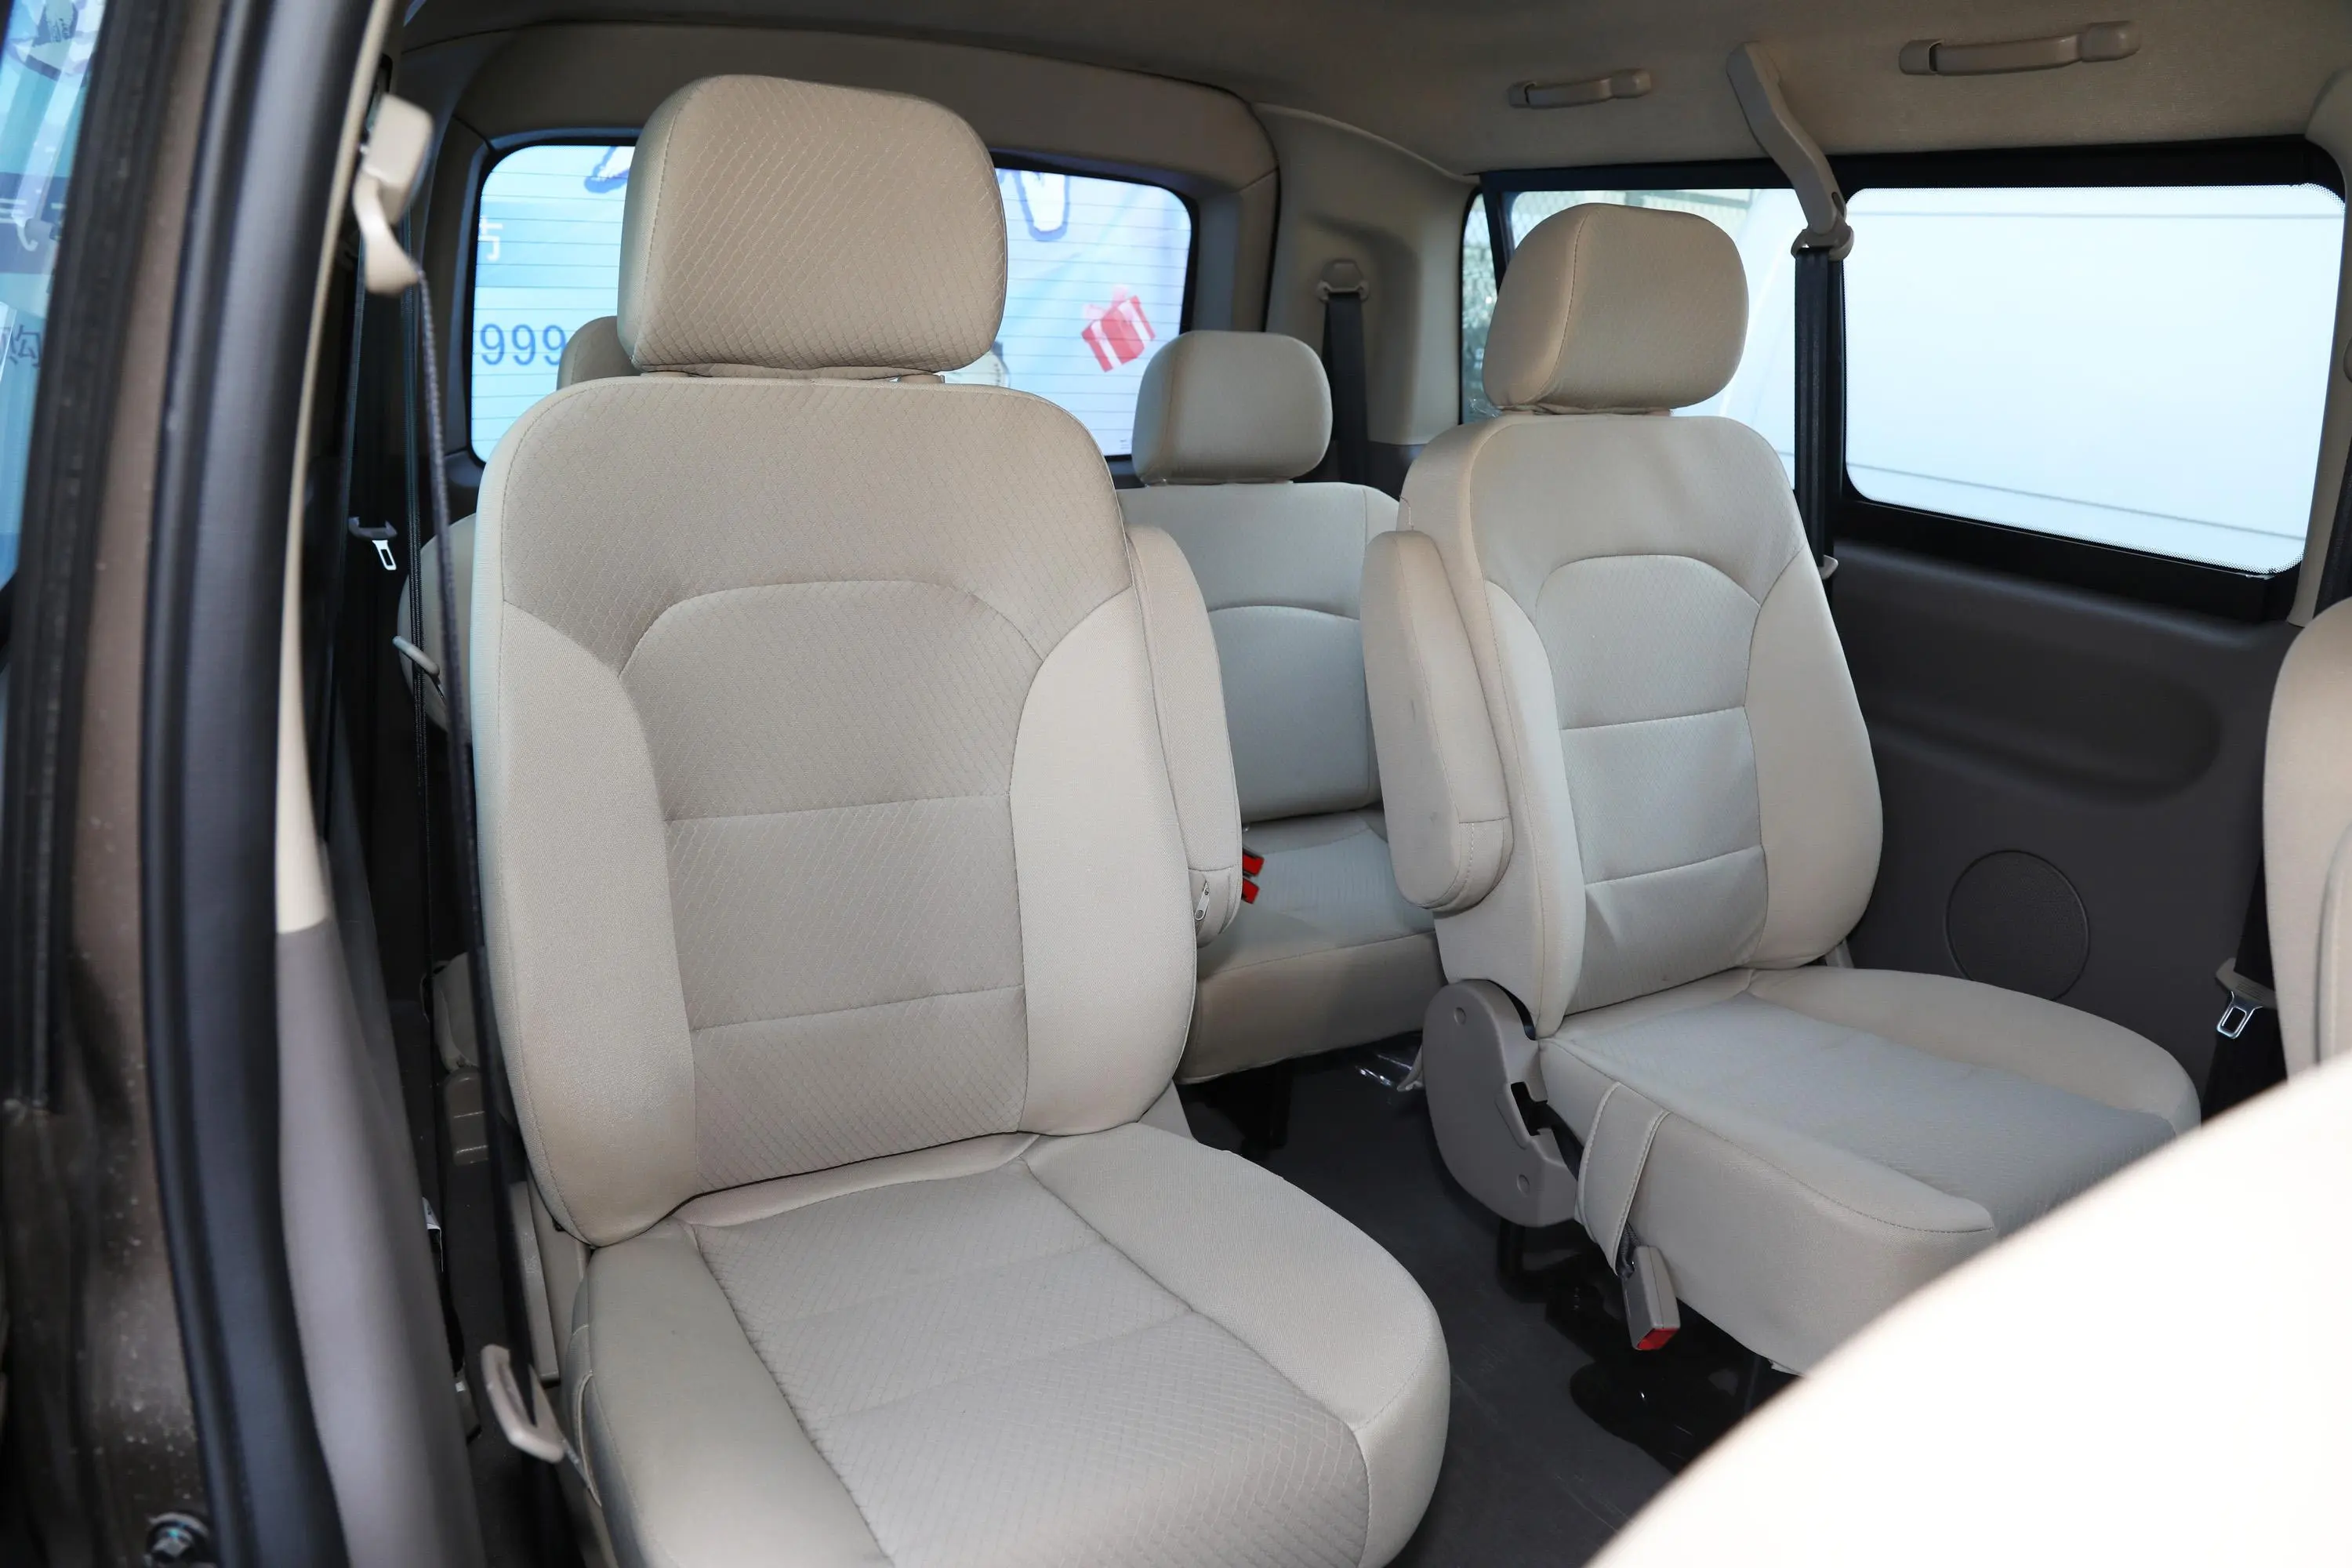 风景G52.0L 手动 明窗 专业版 5-9座 汽油第三排座椅